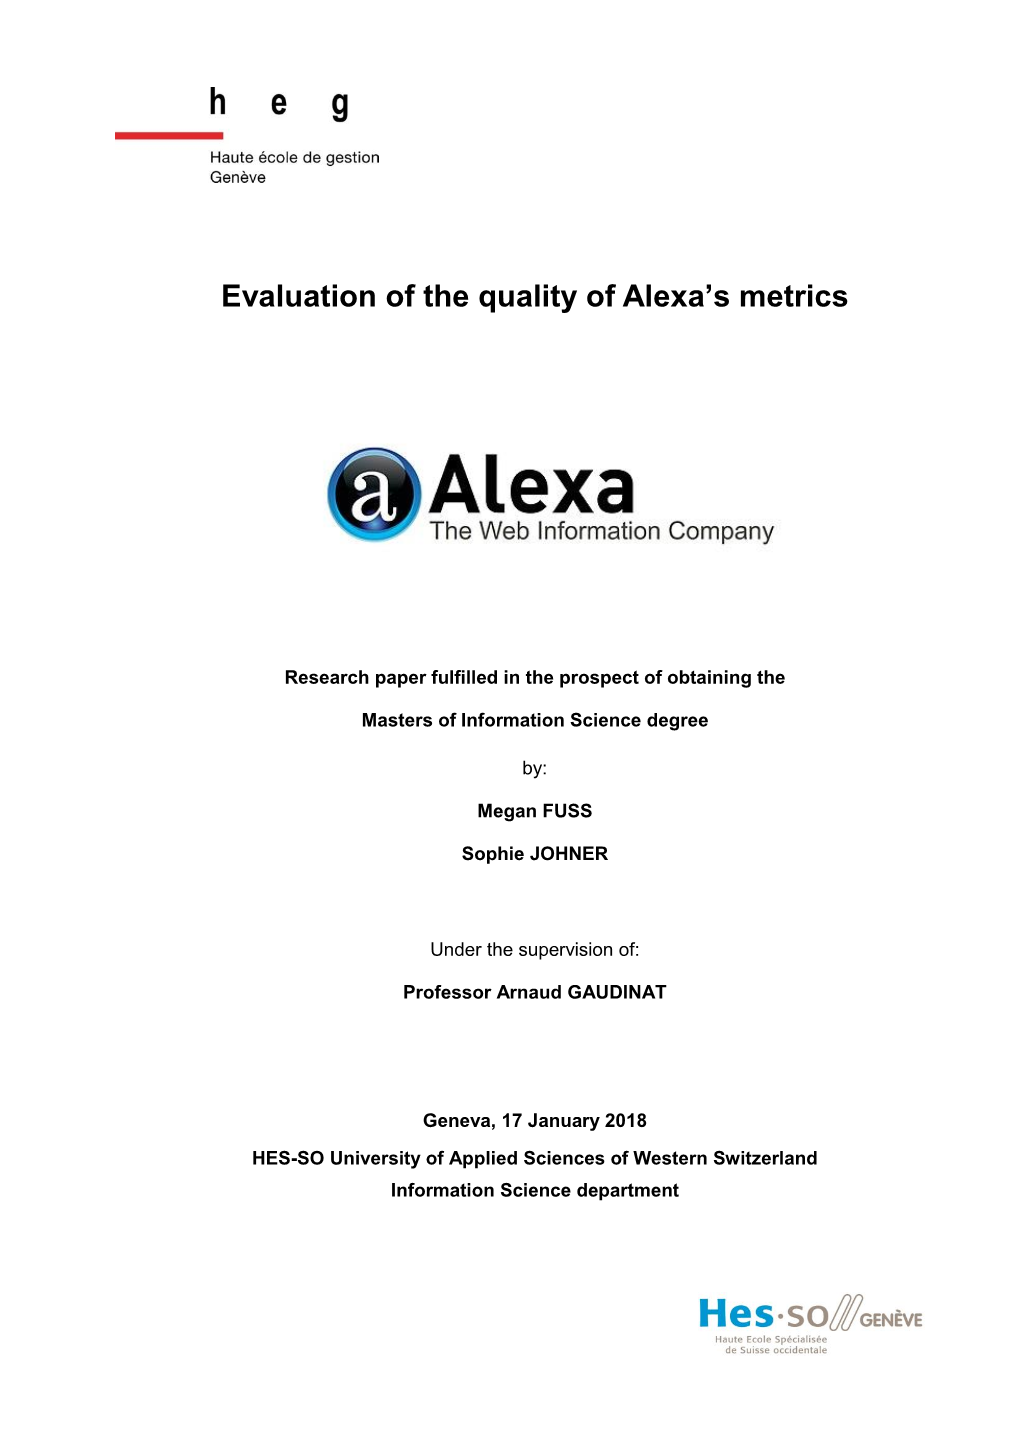 Evaluation of the Quality of Alexa's Metrics